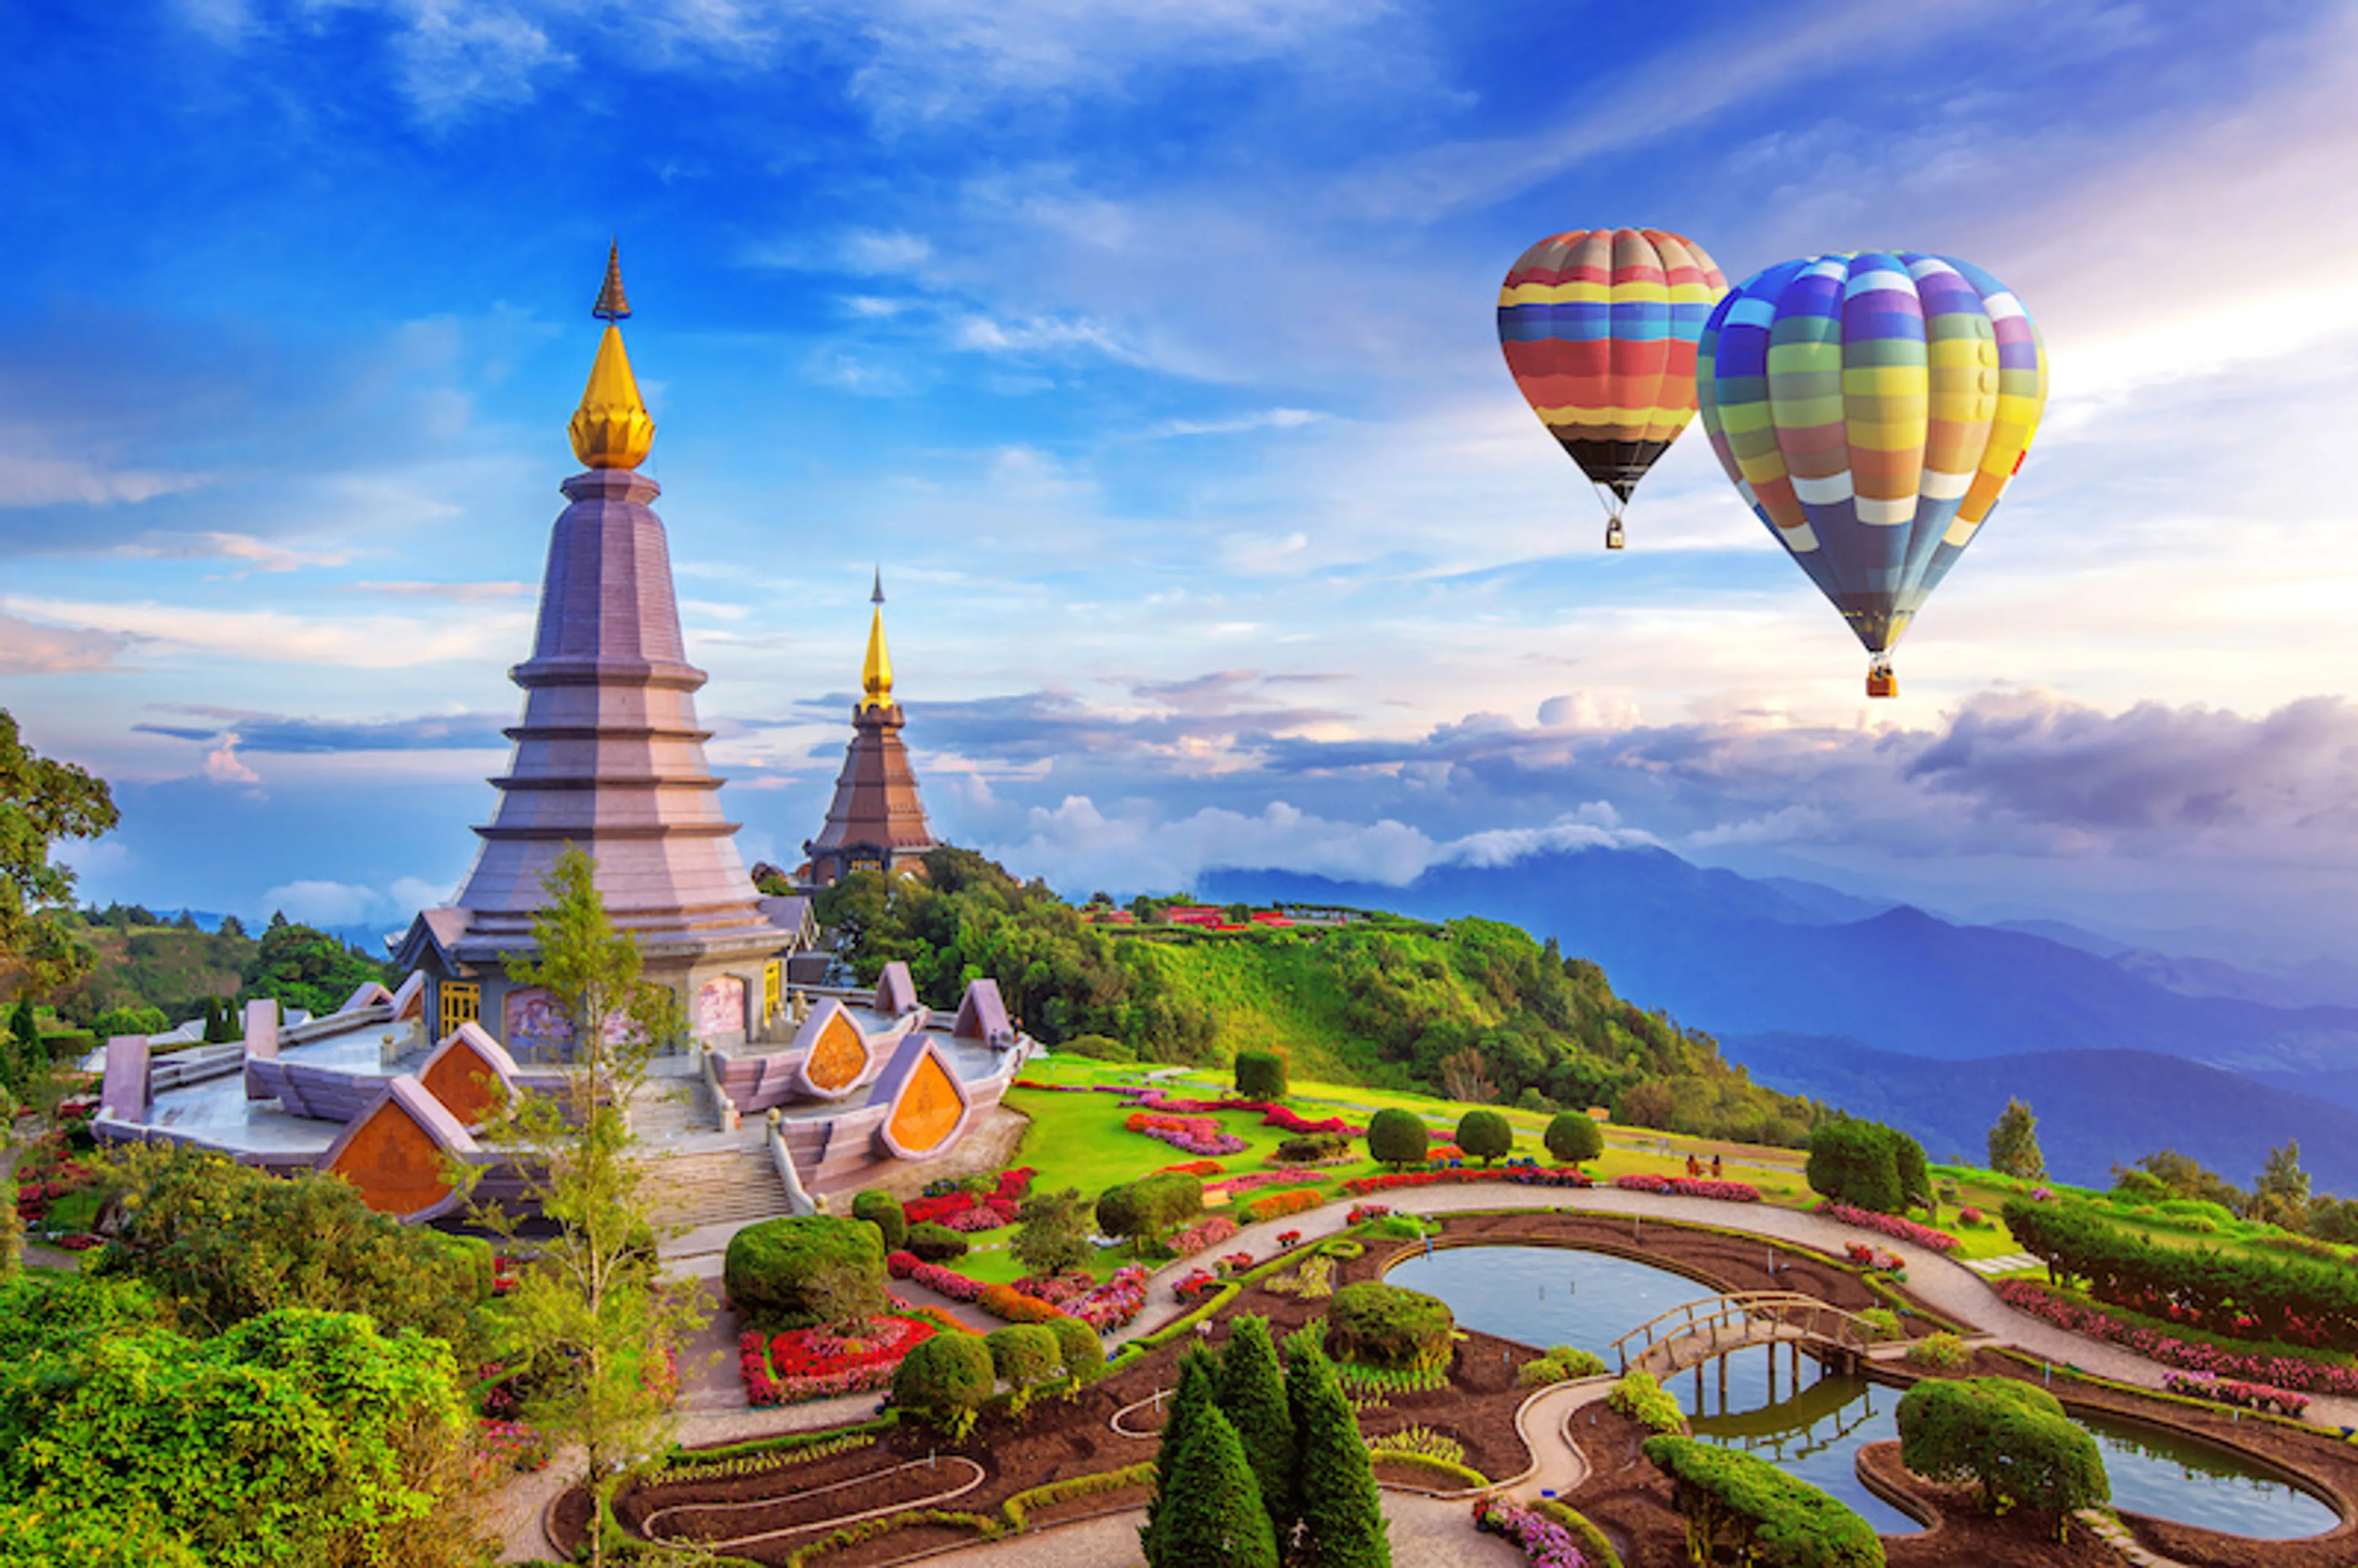 Bhubing Palace, cung điện hoàng gia của Thái Lan tọa lạc tại đỉnh núi Doi Buak Ha ở tỉnh Chiang Mai